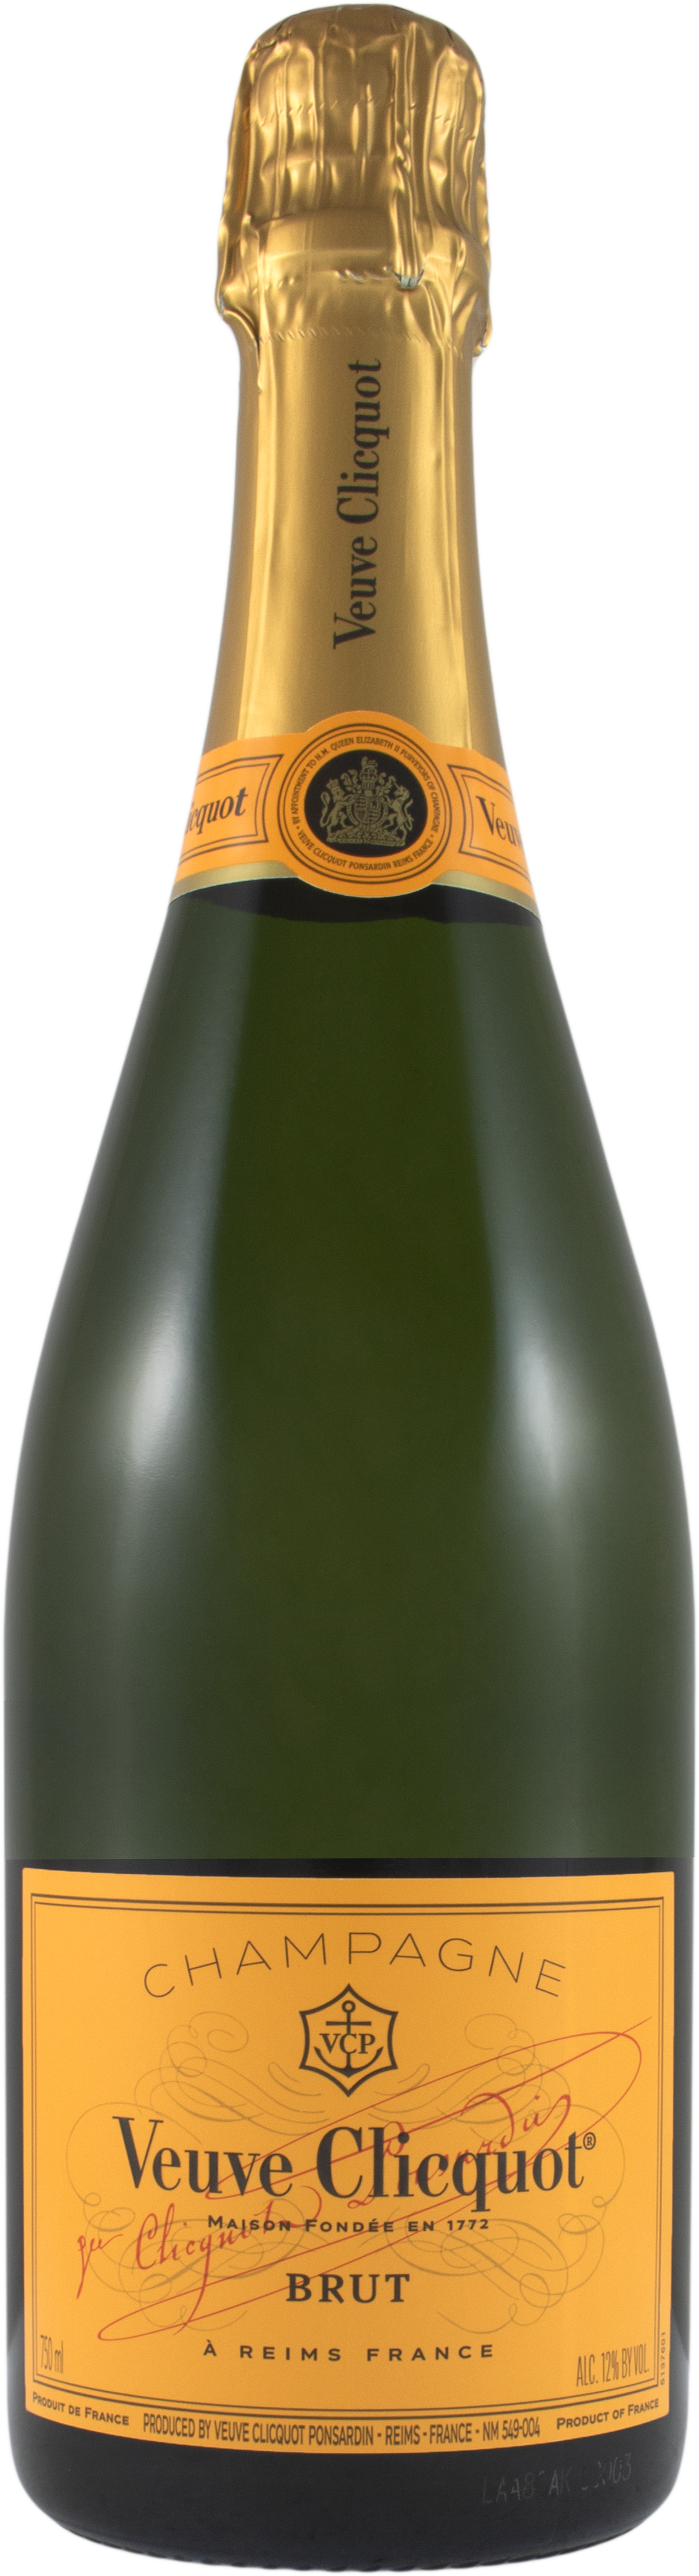 Veuve Clicquot Brut Bottle Transparent Image